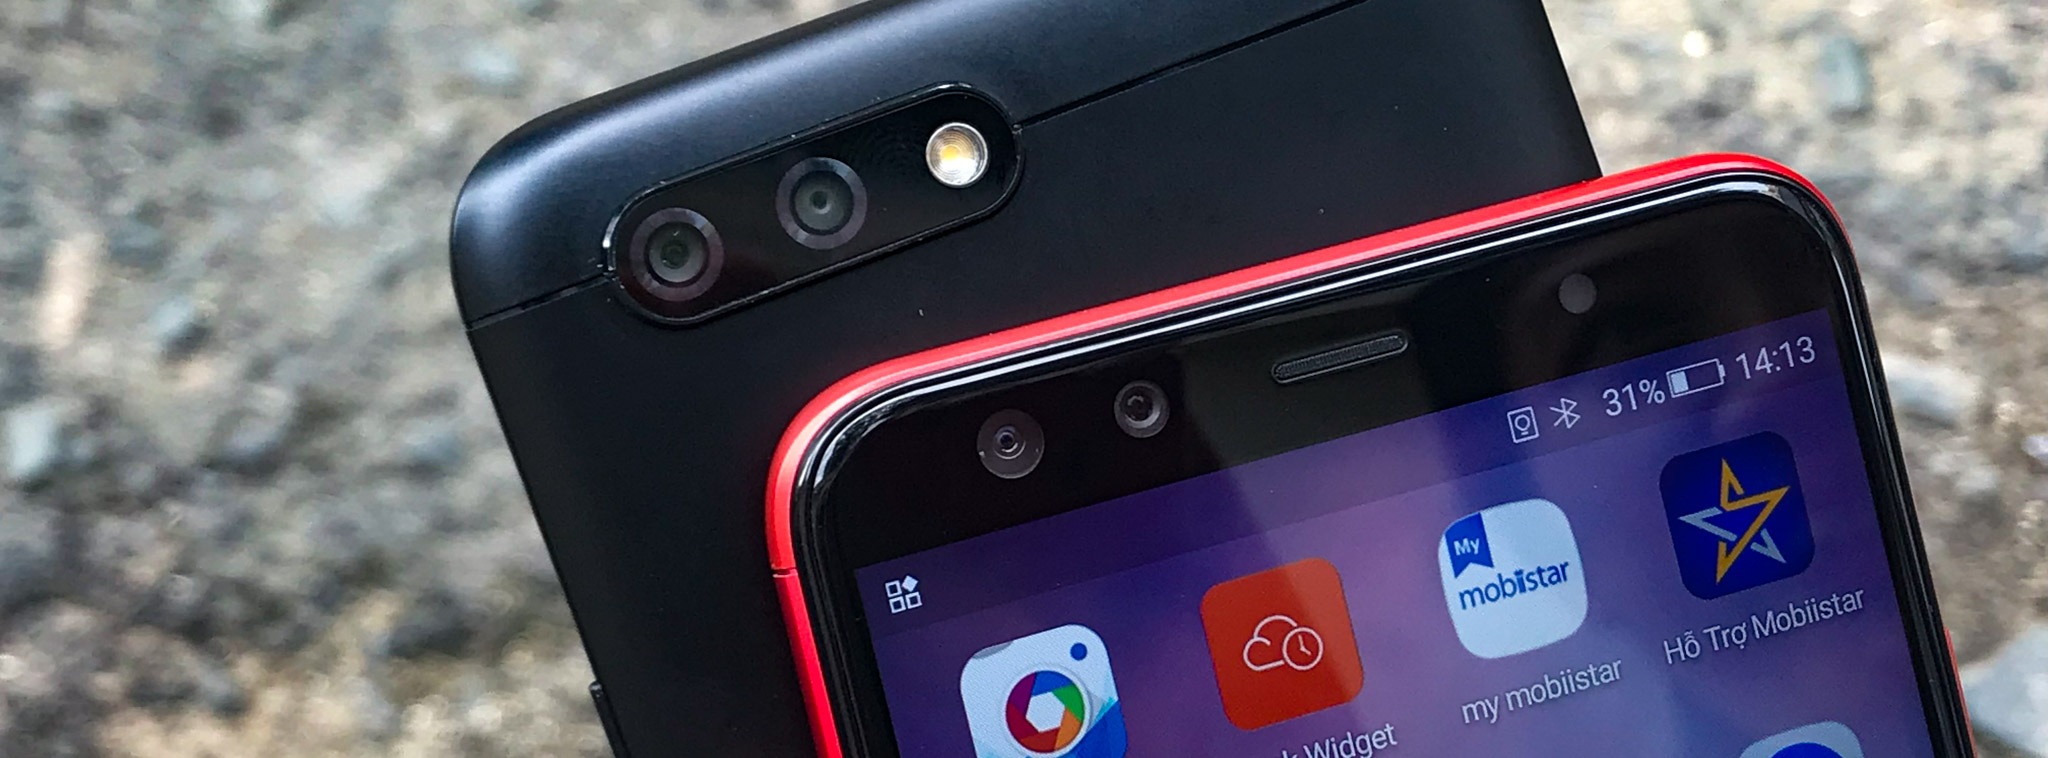 Mobiistar sắp giới thiệu điện thoại 4 camera, màn hình tỉ lệ 18:9, giao diện mới